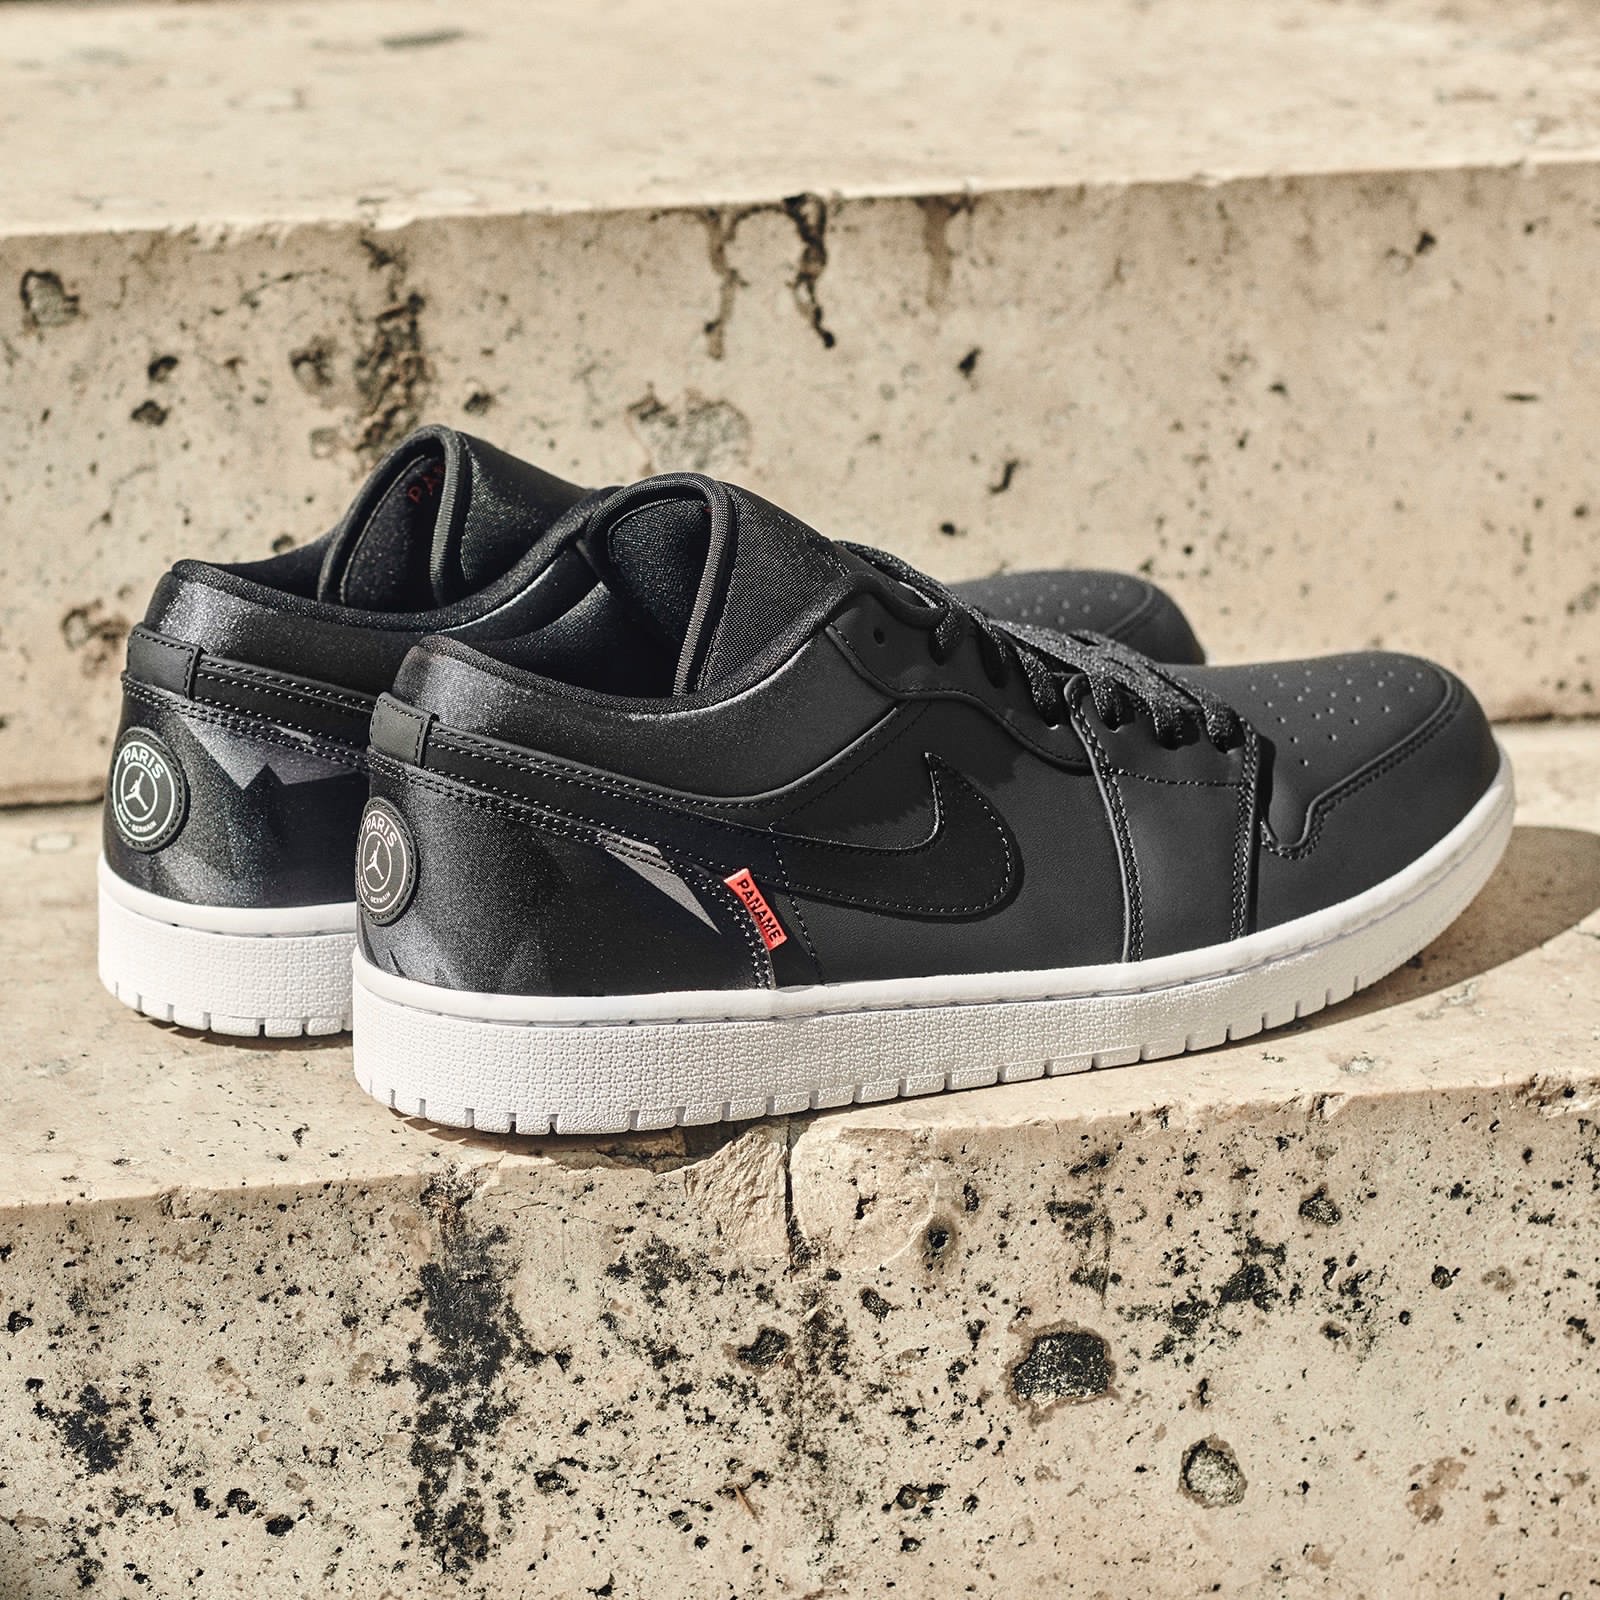 Nike × PSG】Air Jordan 1 Low “PSG”が国内9月14日に発売予定 | UP TO DATE